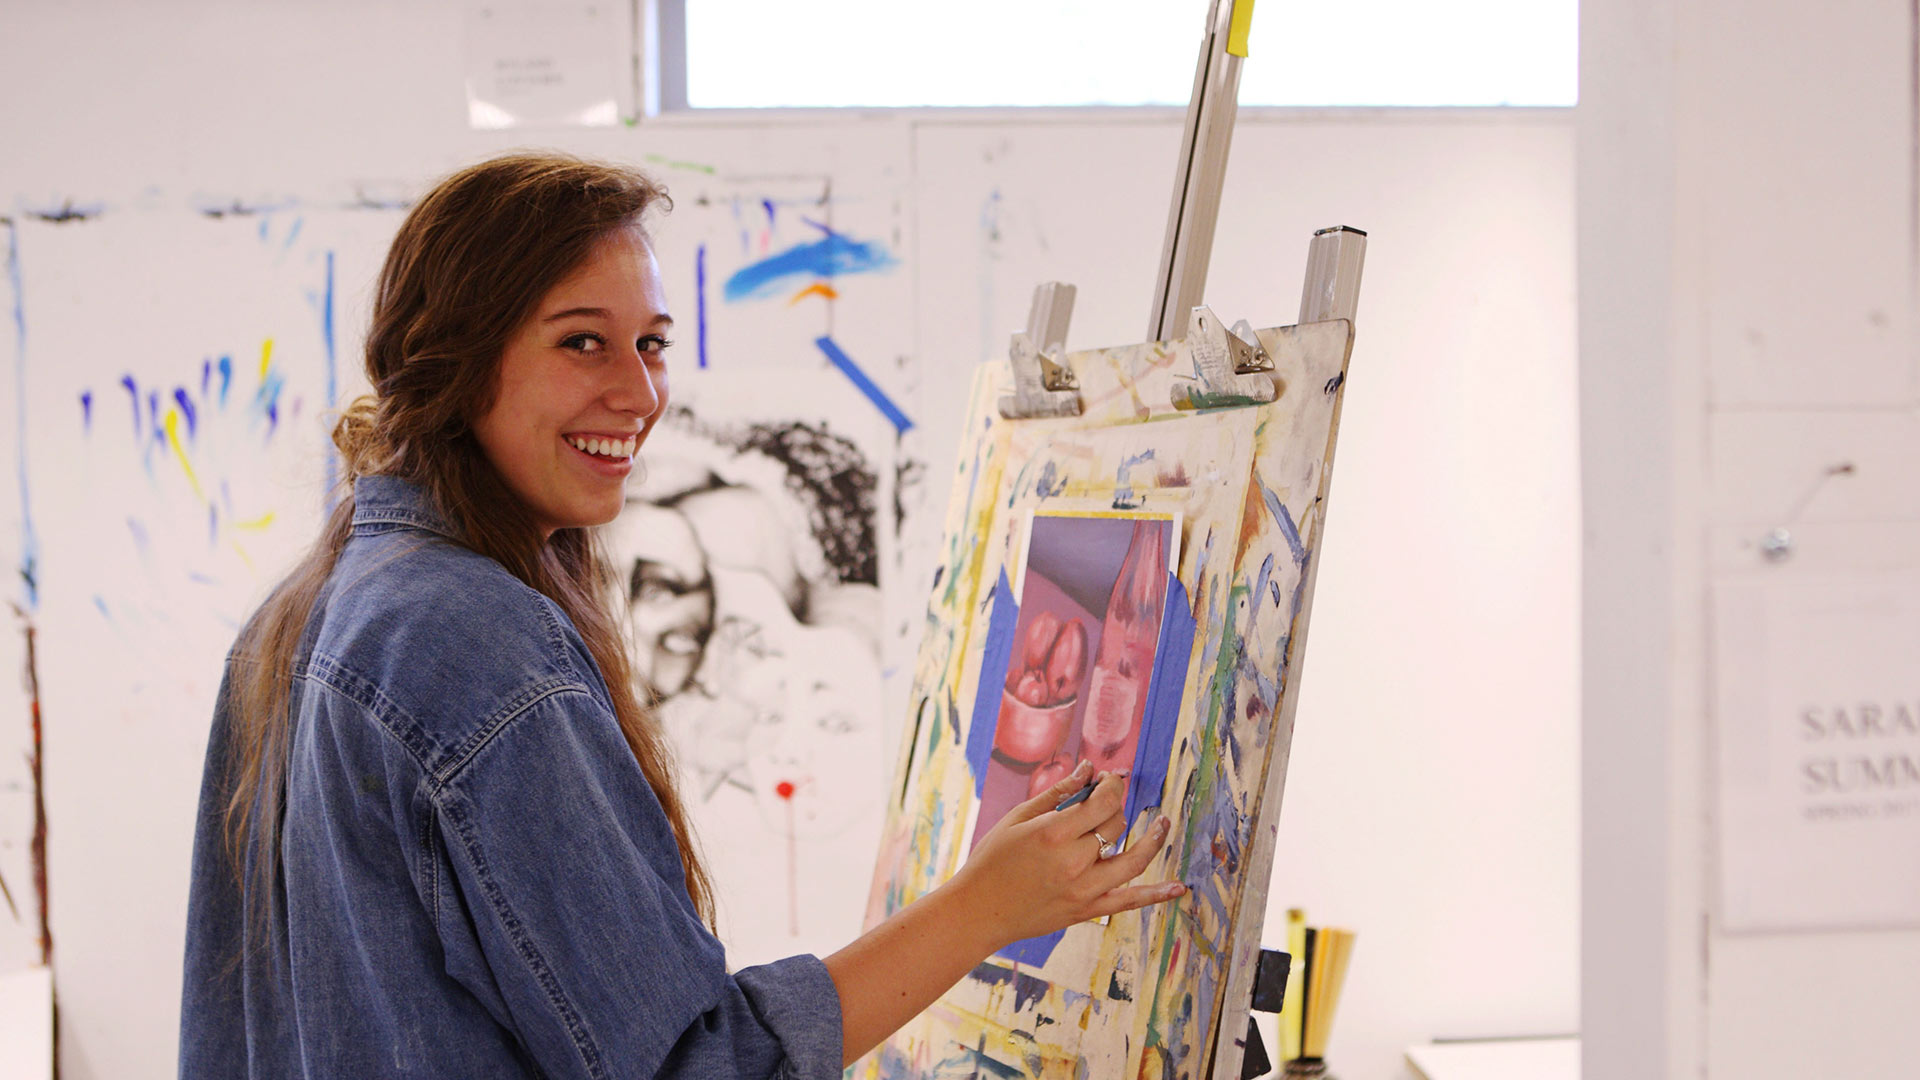 Samford Student artist smiling